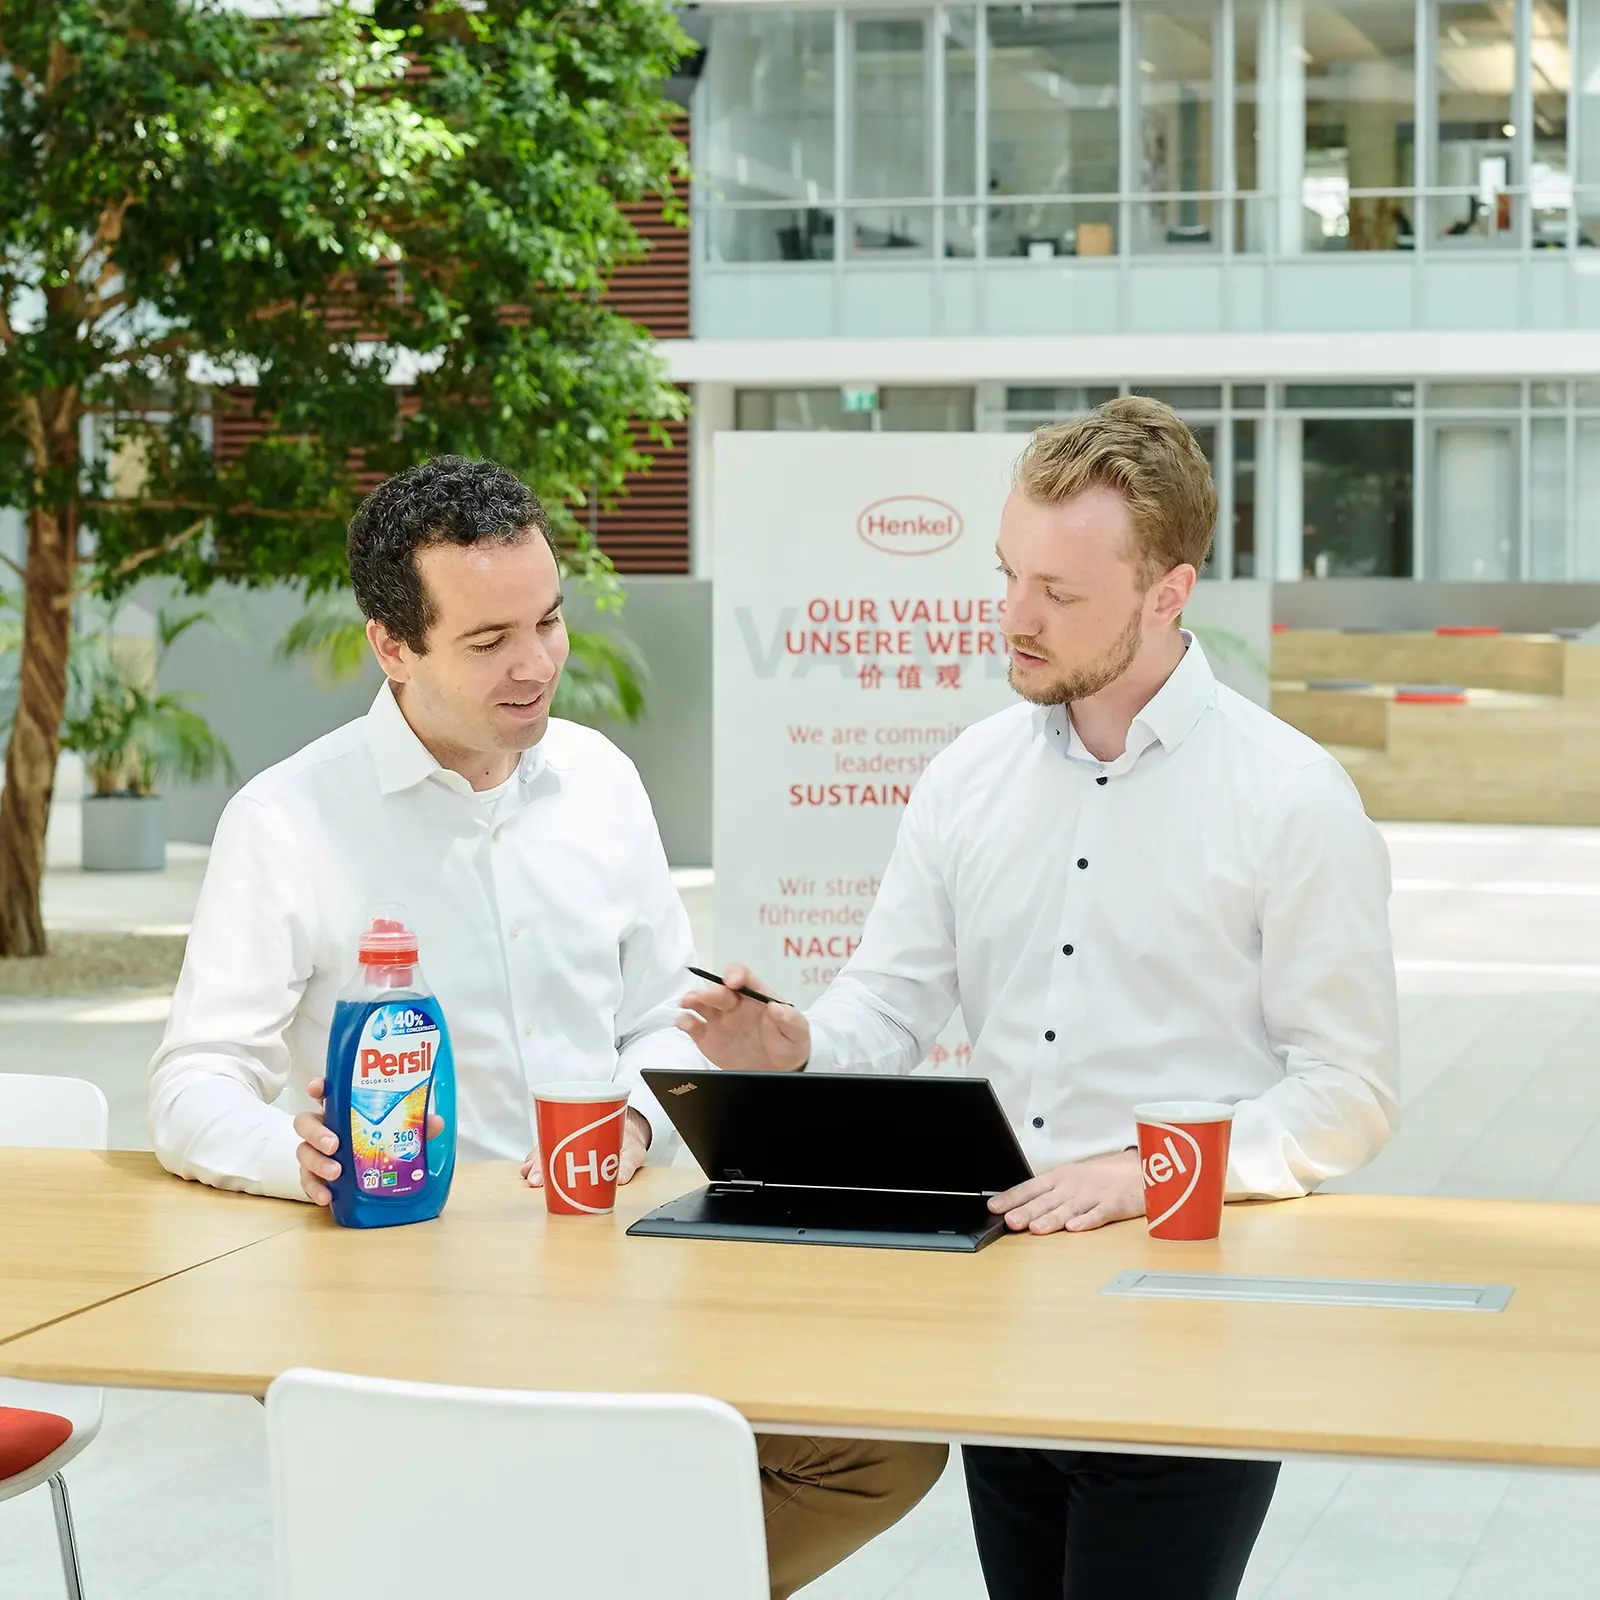 Két férfi egy asztal mellett áll egy Persil flakonnal és egy laptoppal